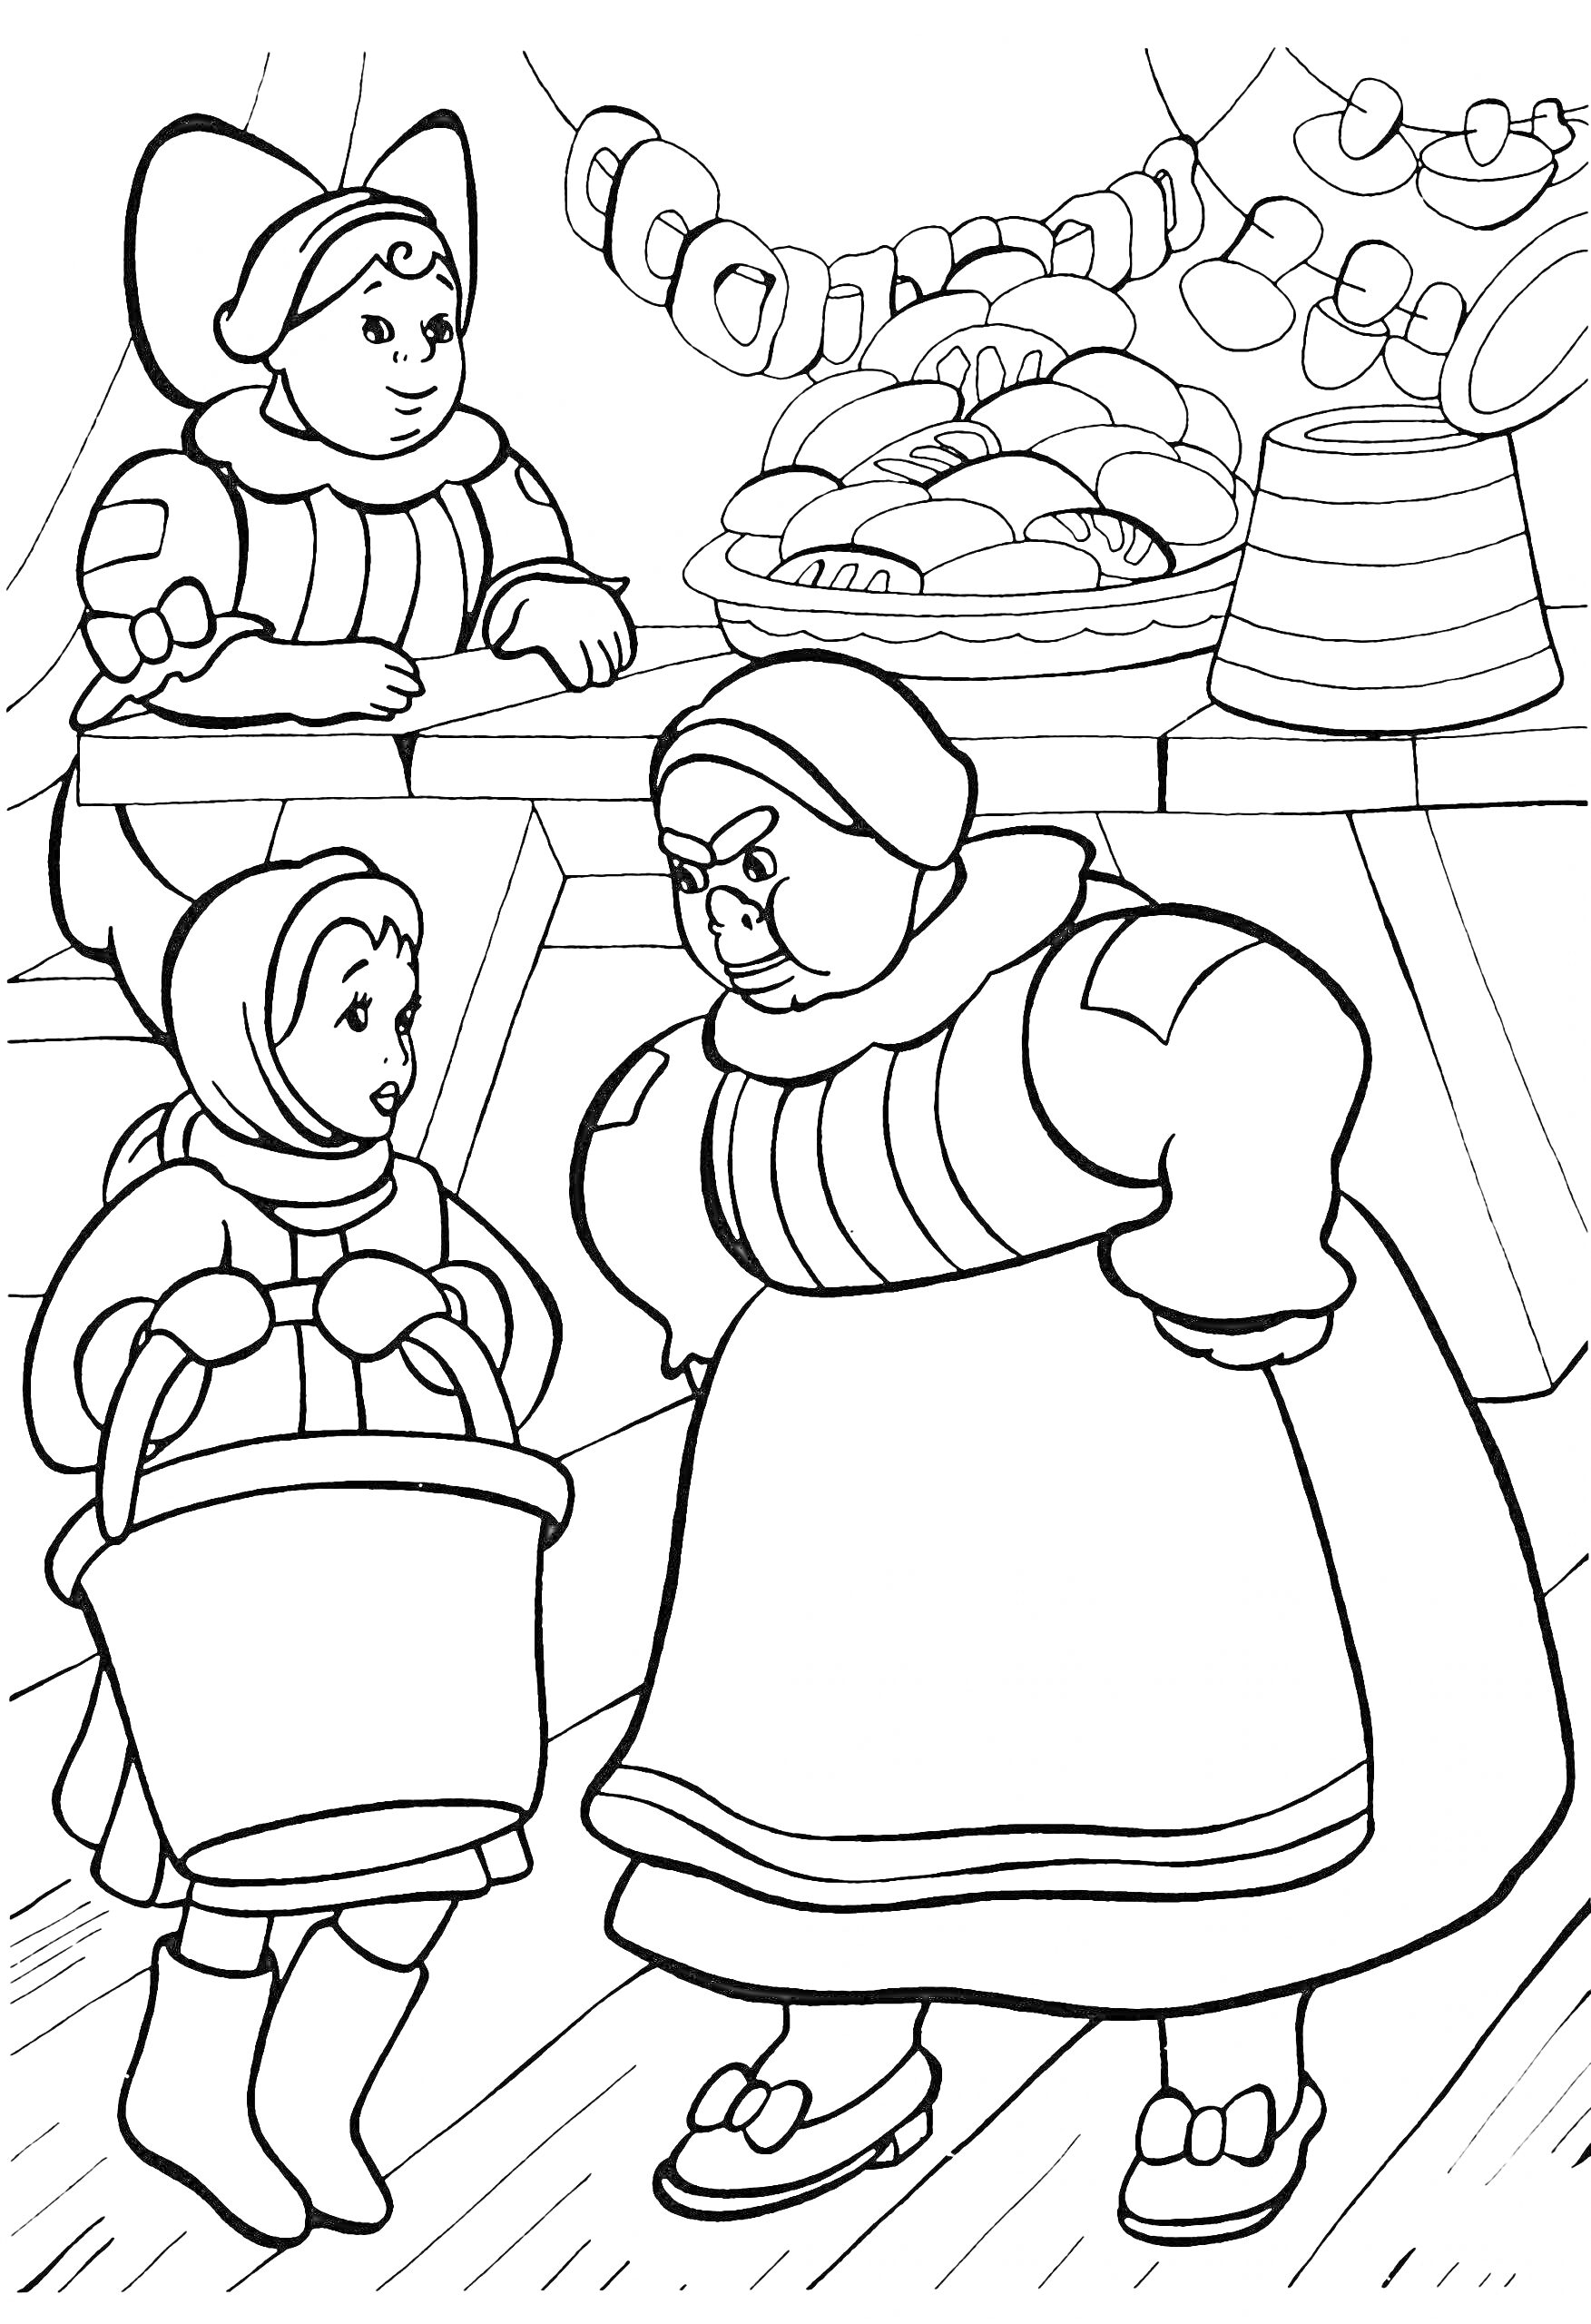 Рынок в новогодней сказке, продавщица, покупательница с корзиной, лавка с хлебом и колбасой